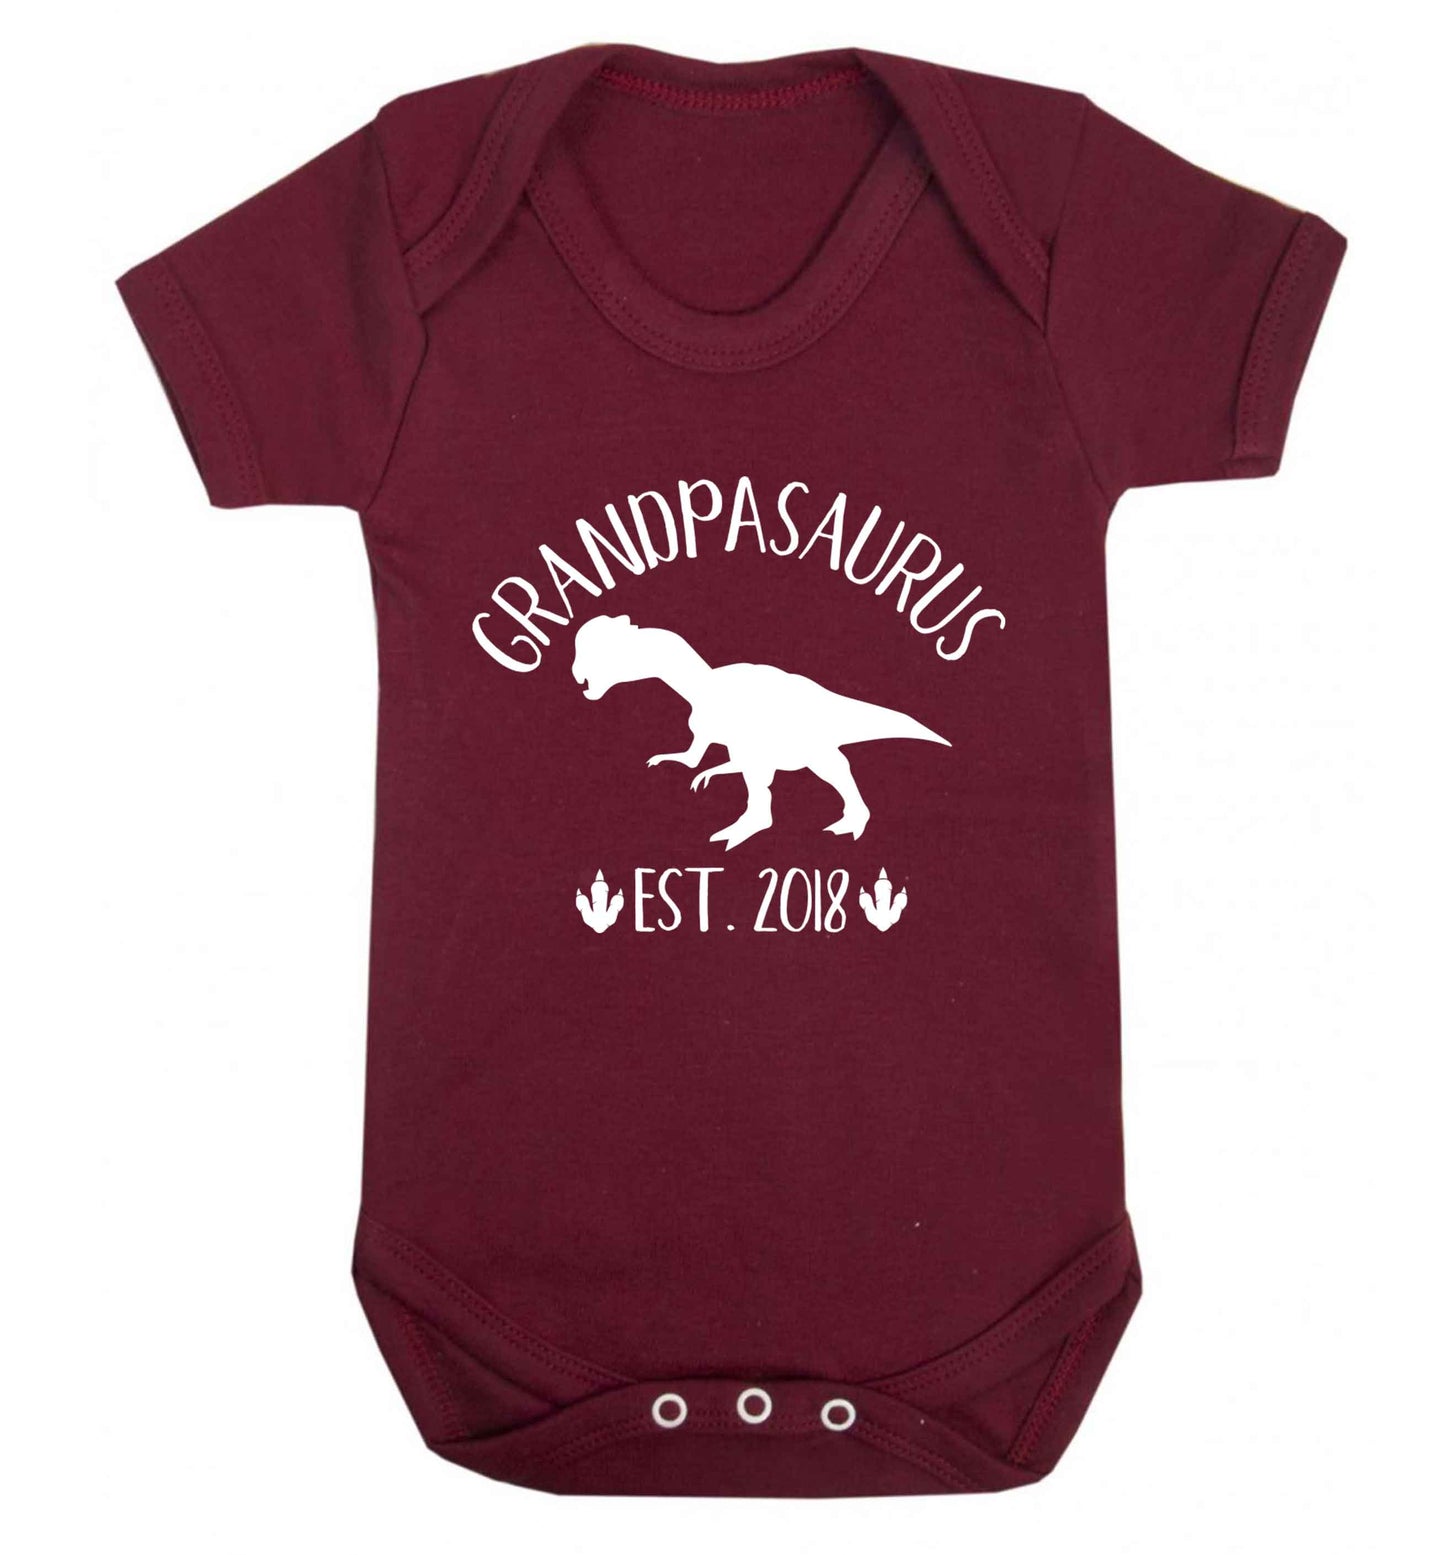 Personalised grandpasaurus since (custom date) Baby Vest maroon 18-24 months